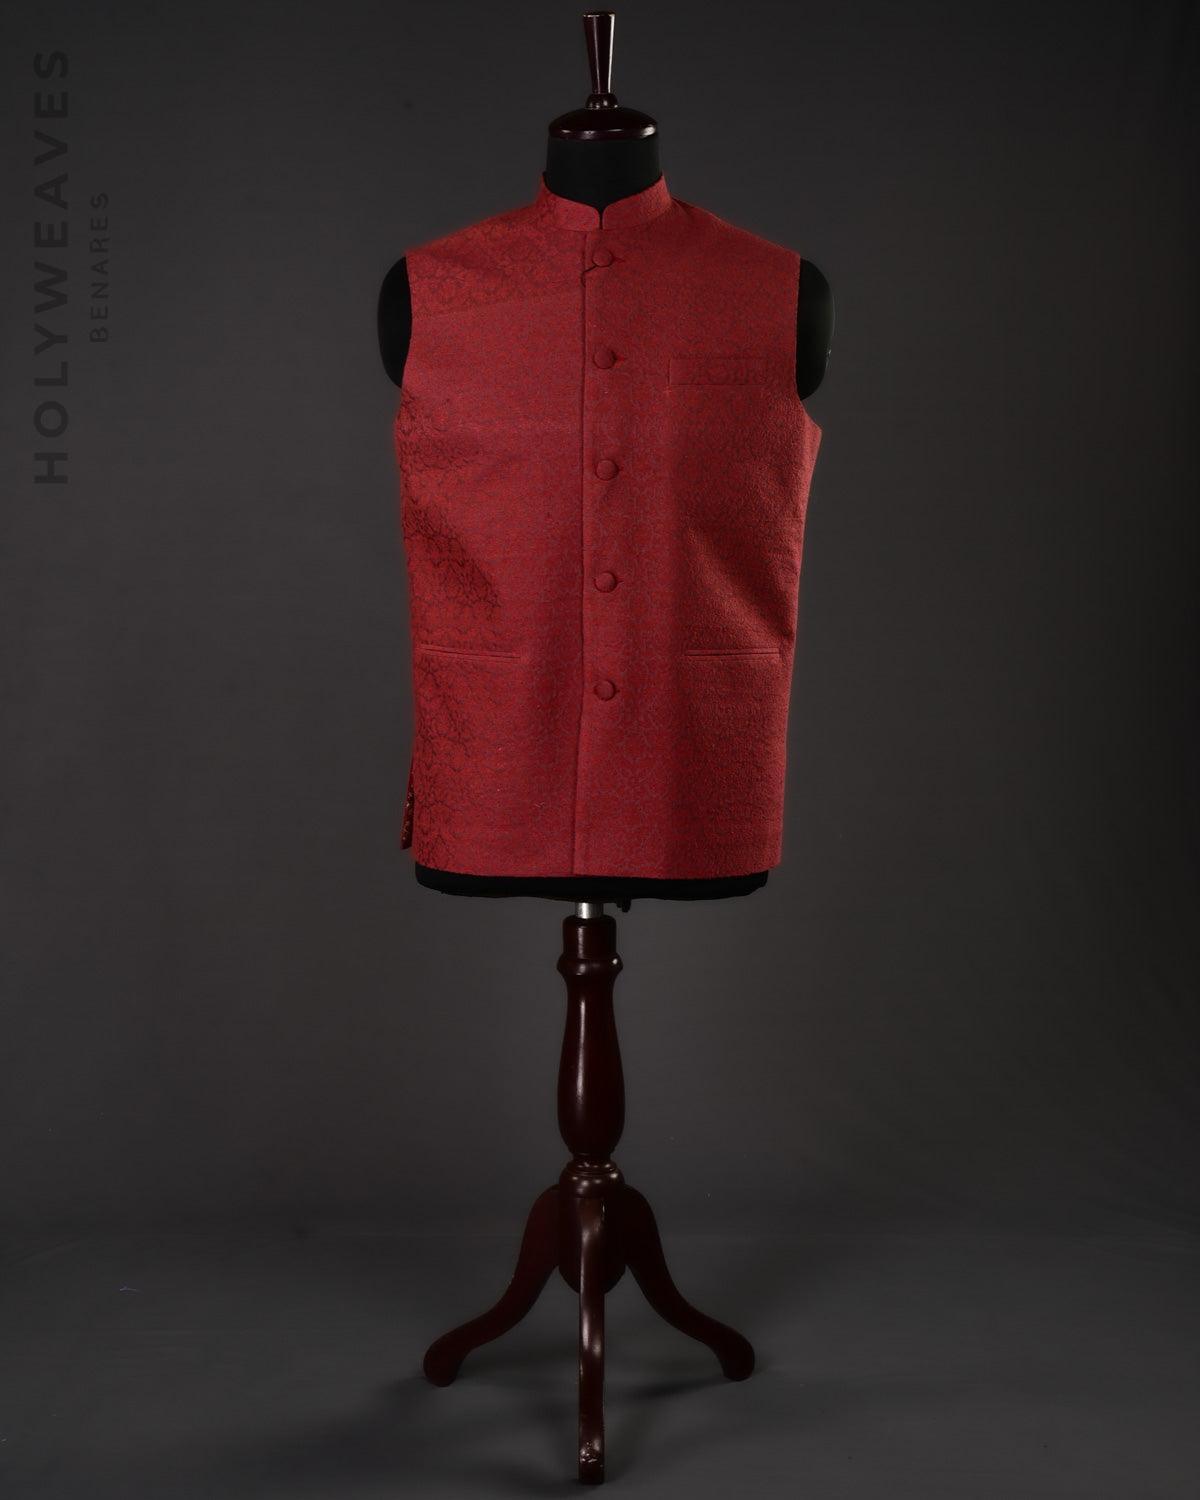 Maroon Banarasi Resham Damask Brocade Handwoven Noile Silk Mens Modi Jacket - By HolyWeaves, Benares